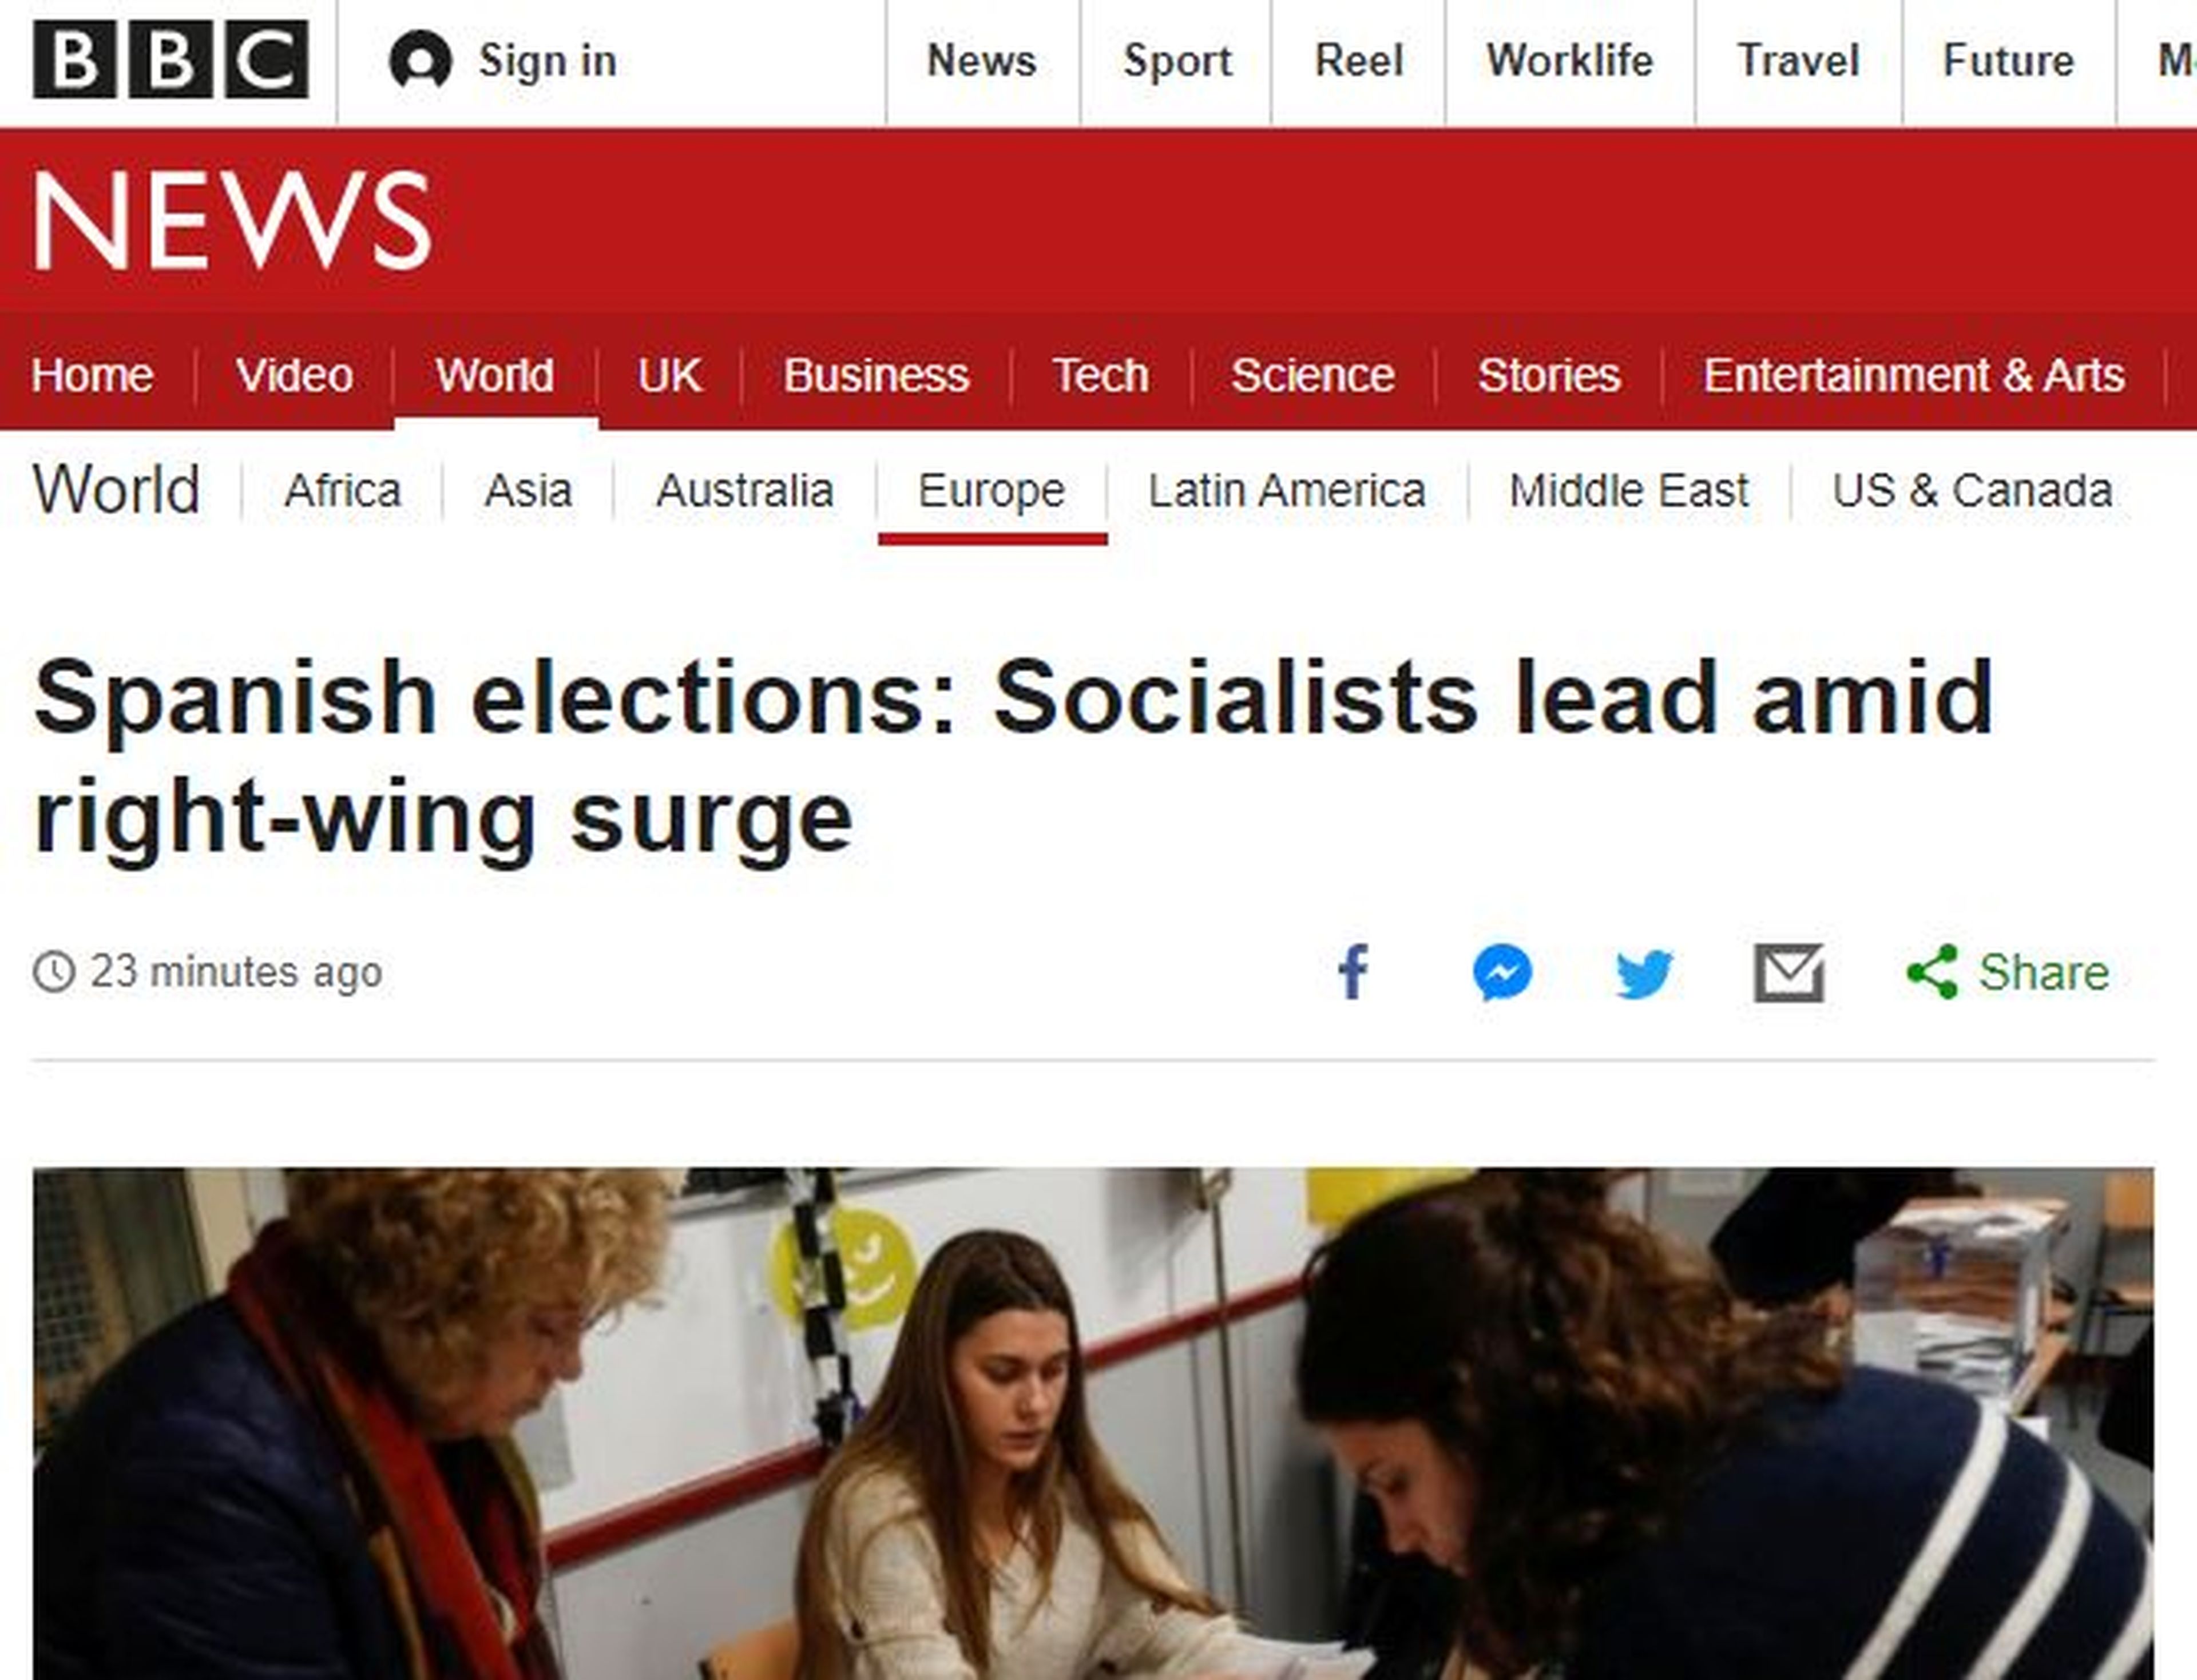 La portada de BBC sobre los resultados de las elecciones generales en España.